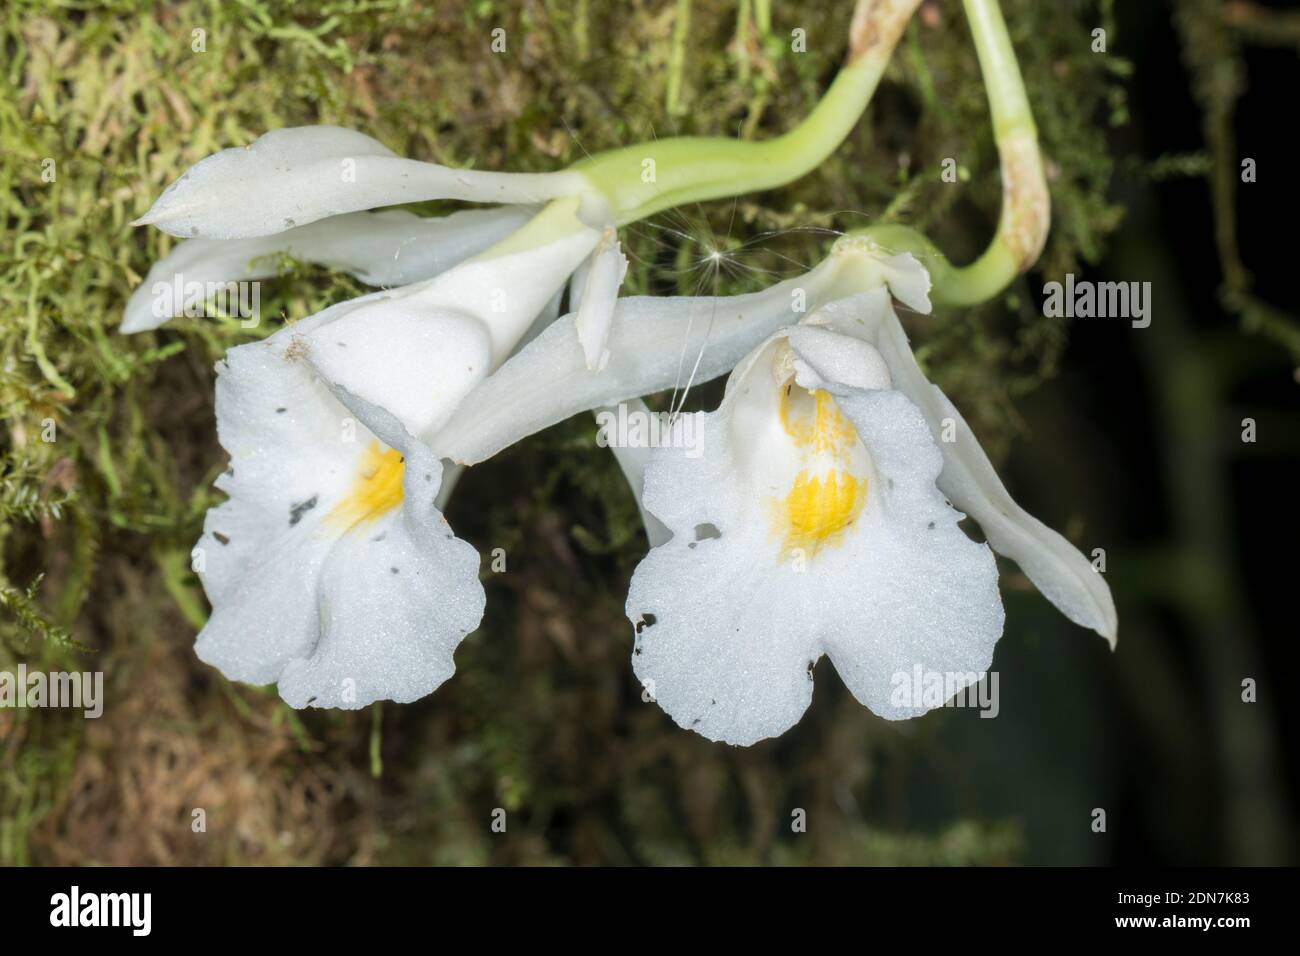 L'orchidée Trichopilia parfumée (Trichopilia fragrans) qui grandit sauvage dans la forêt montagnarde de la réserve de Los Cedros, dans l'ouest de l'Equateur Banque D'Images